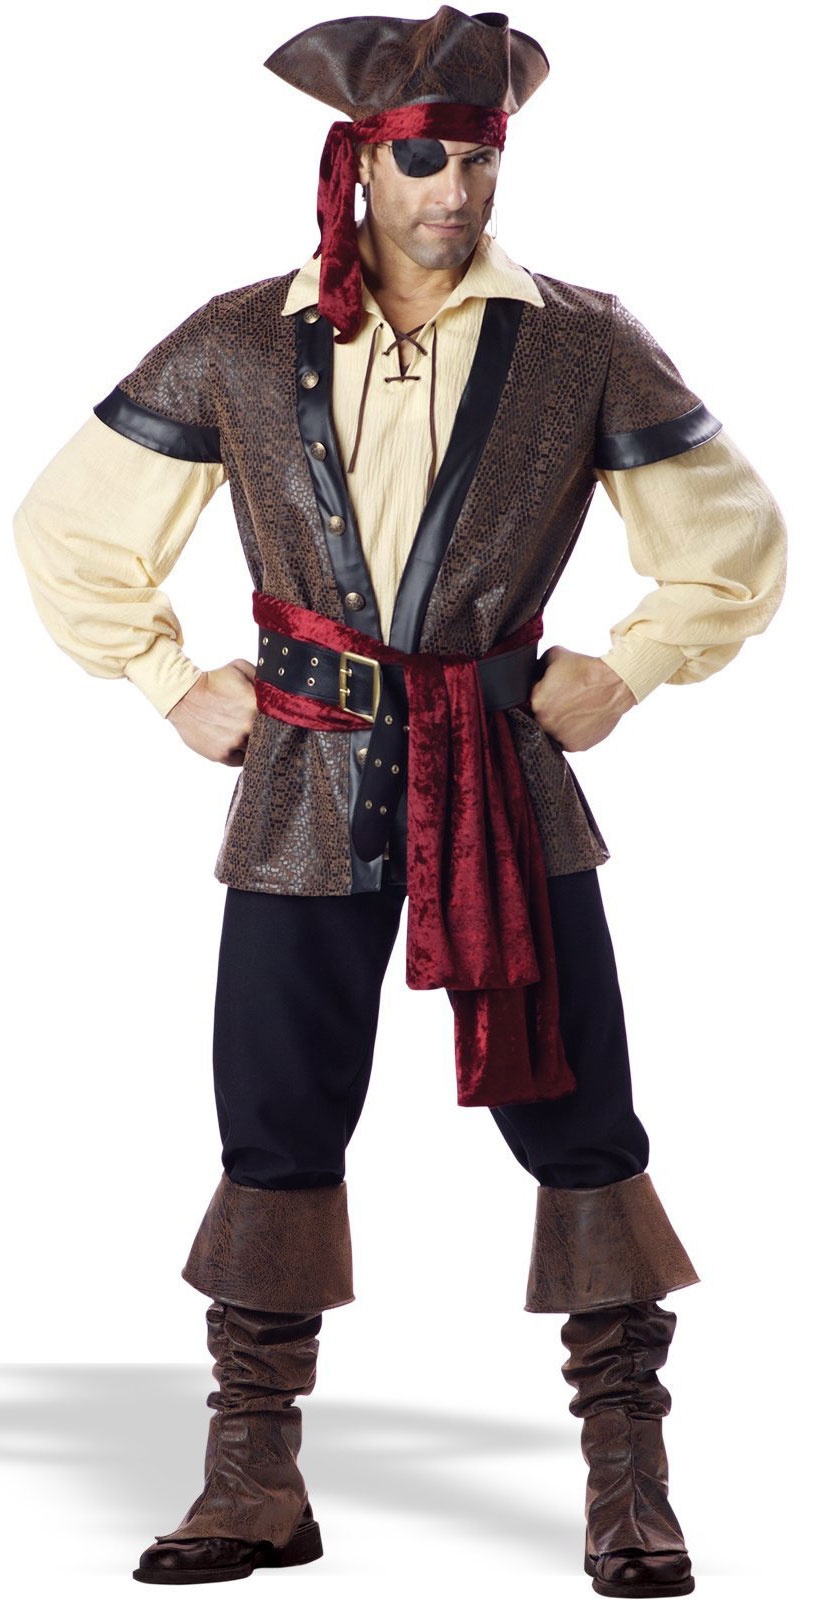 1023-rustic-pirate-costume.jpg